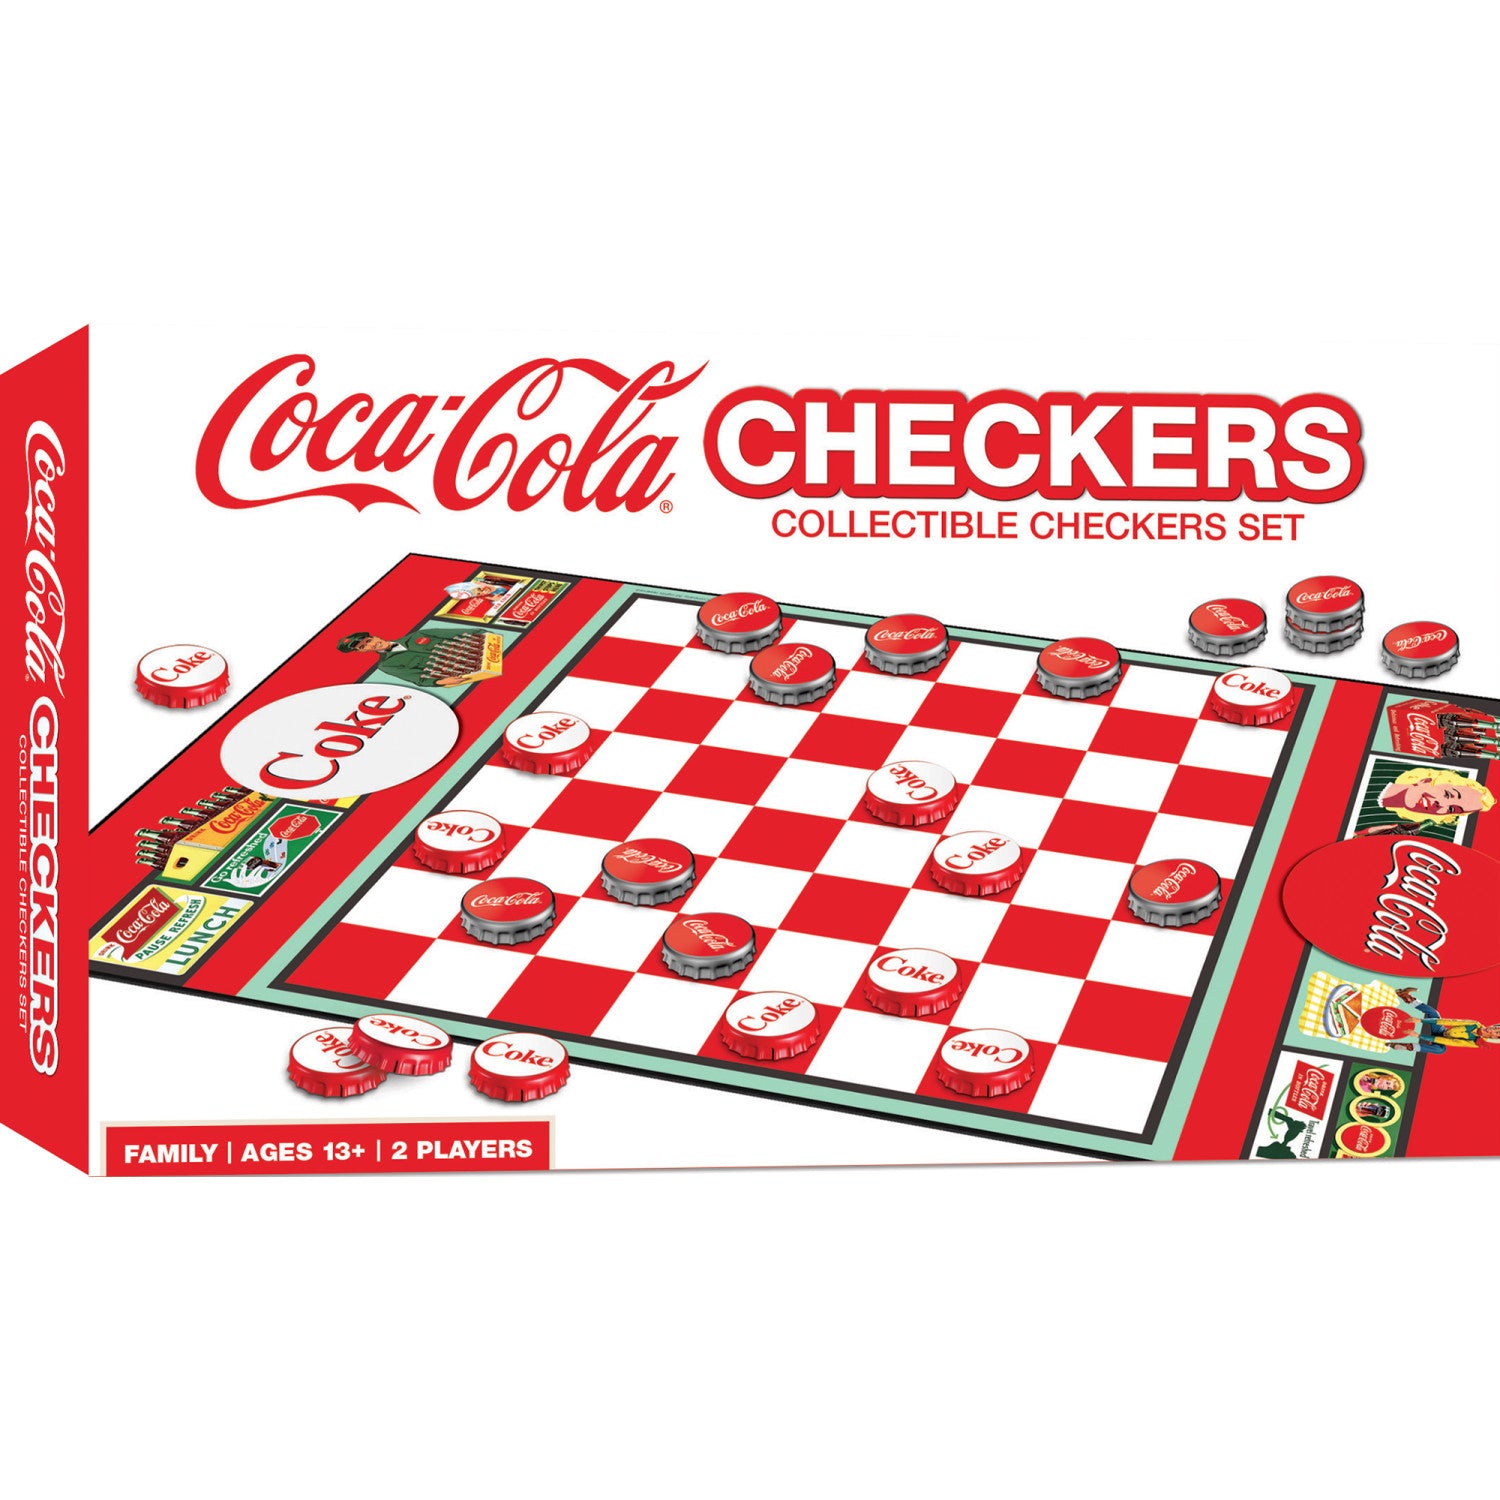 Coca-Cola Checkers